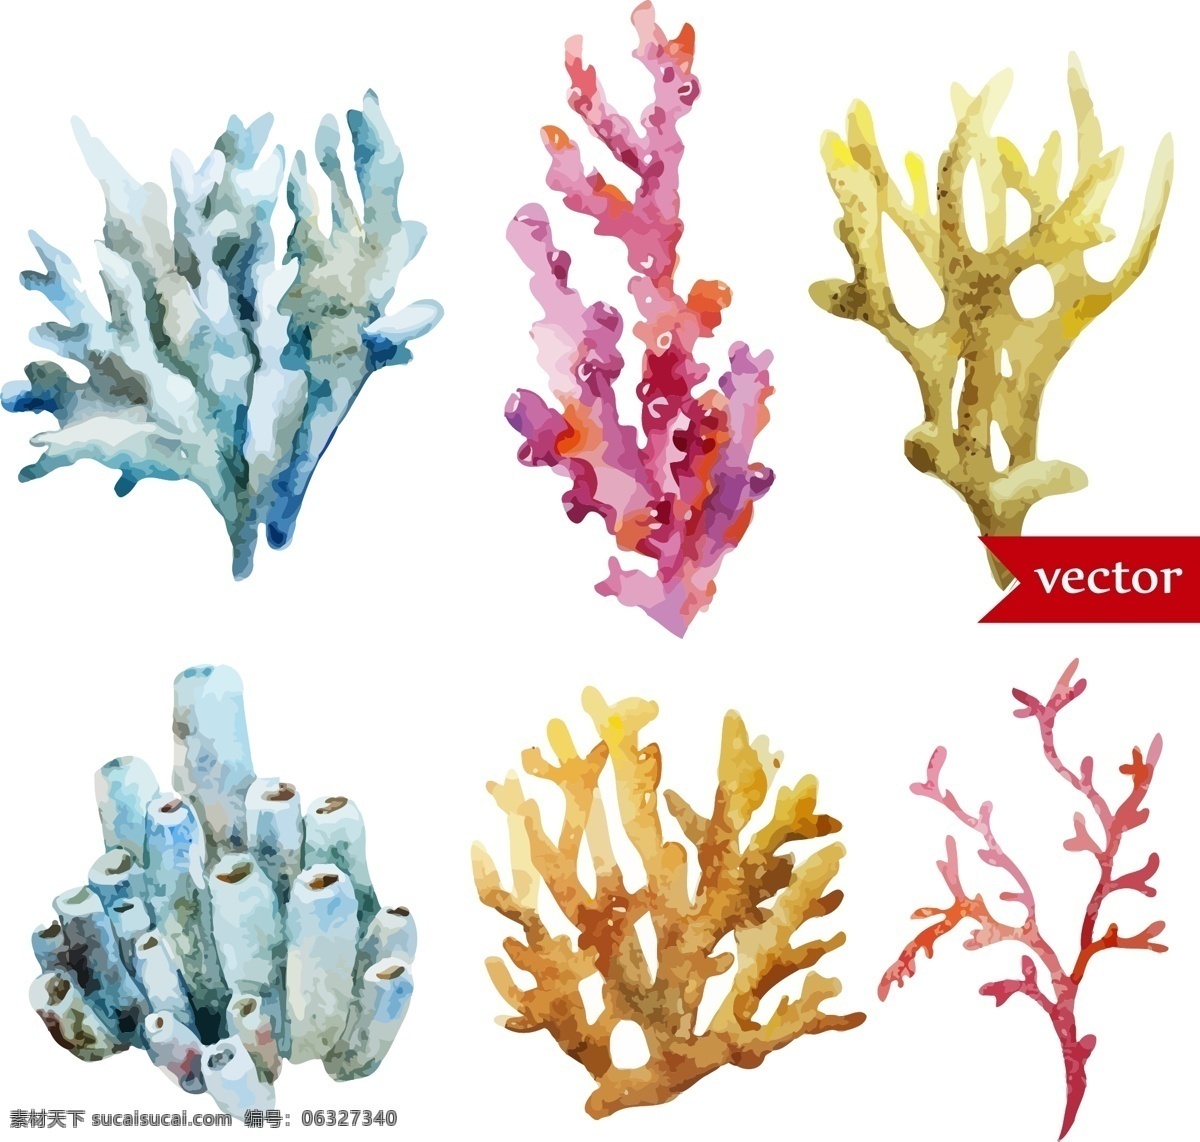 卡通 彩色 珊瑚 水彩 夏日 海洋 动物 元素 植物 装饰 创意 涂鸦 小清新 填充 插画 背景 海报 广告 包装 印刷 夏天